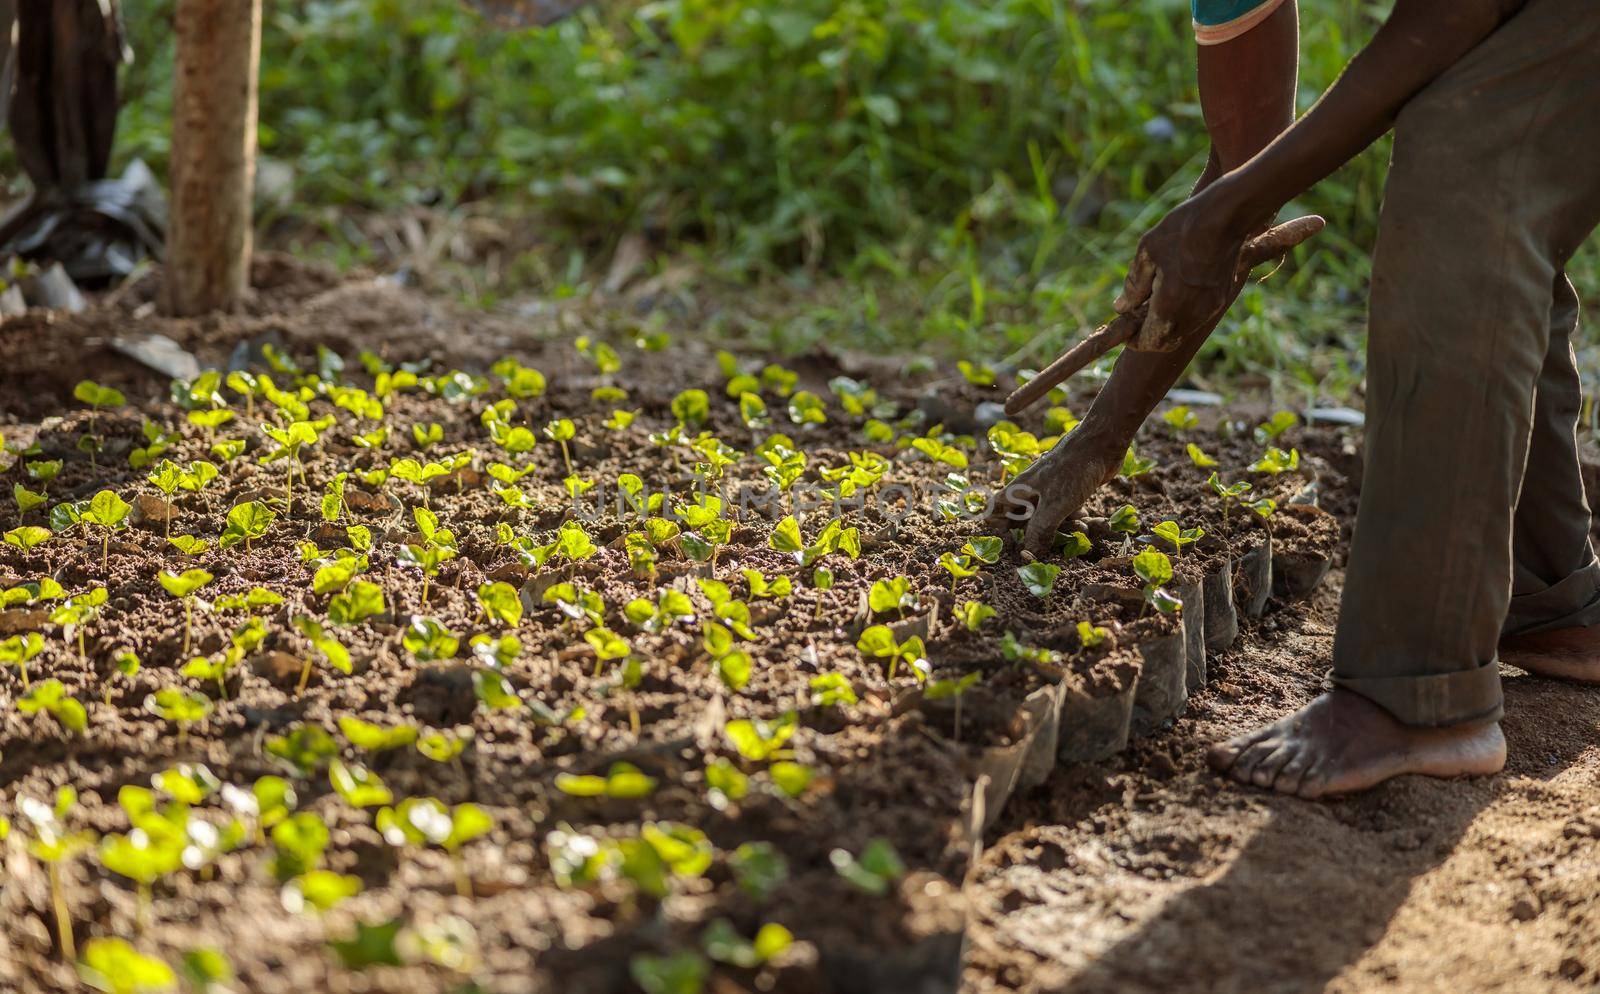 Coffee sprout growing from seedling in plant nurseries in Africa by Yaroslav_astakhov